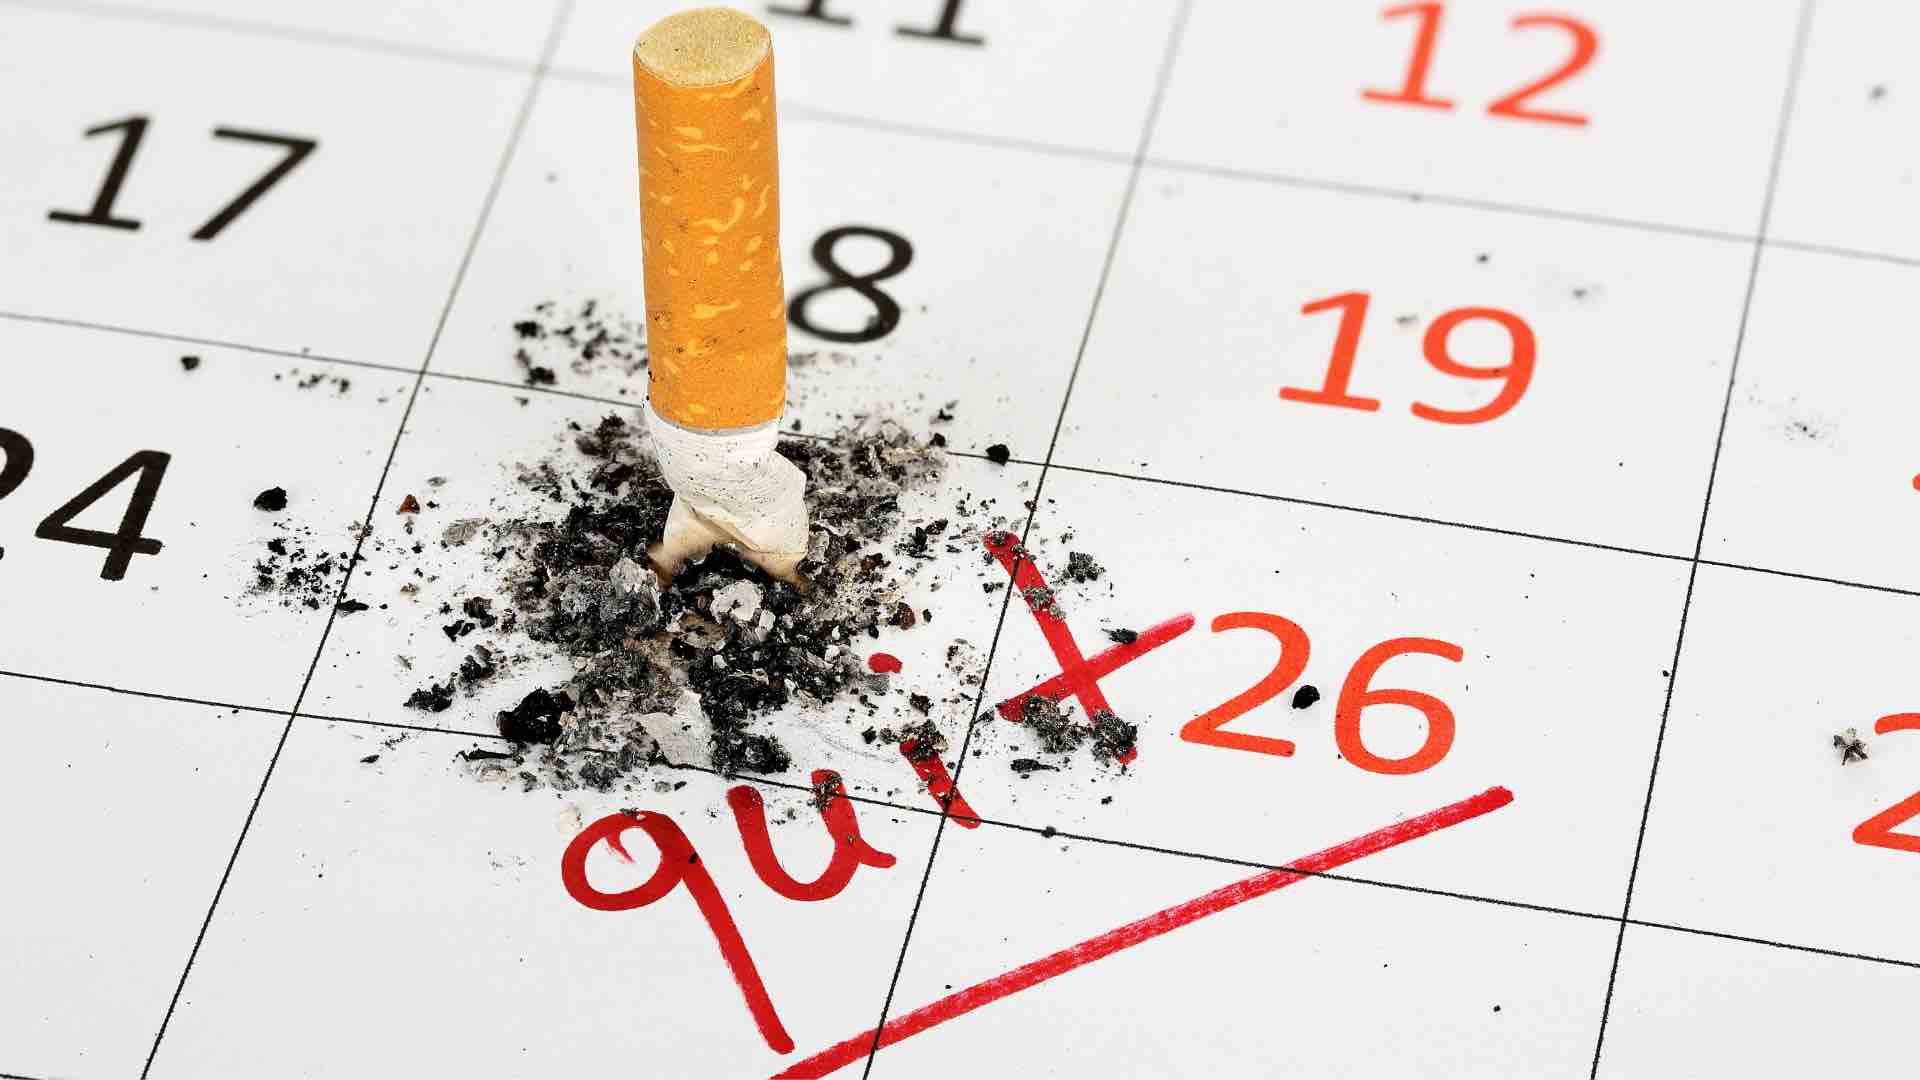 Quit smoking - prevent chronic disease